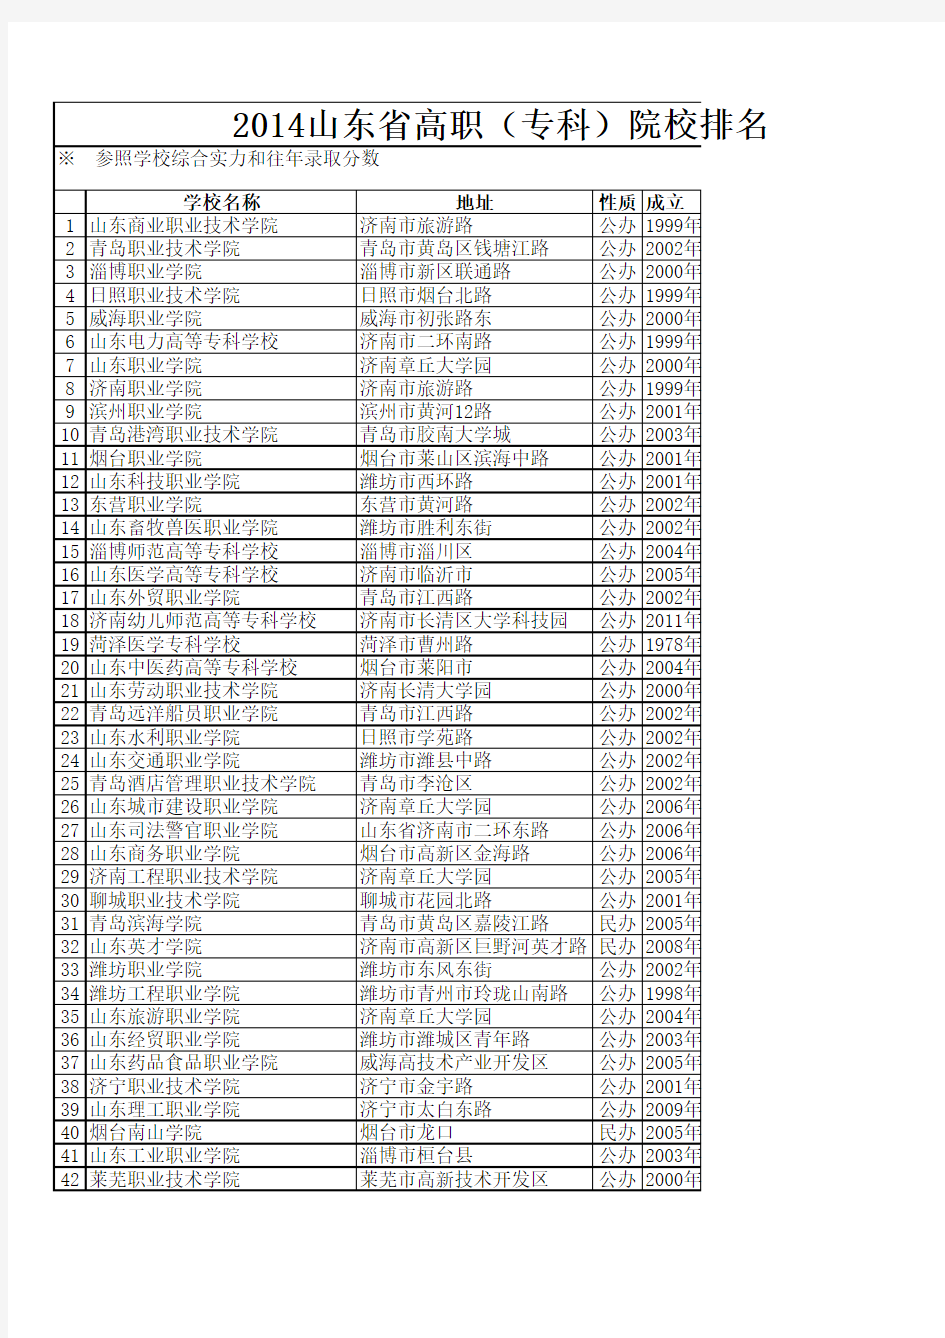 2014年山东高职院校排名情况表